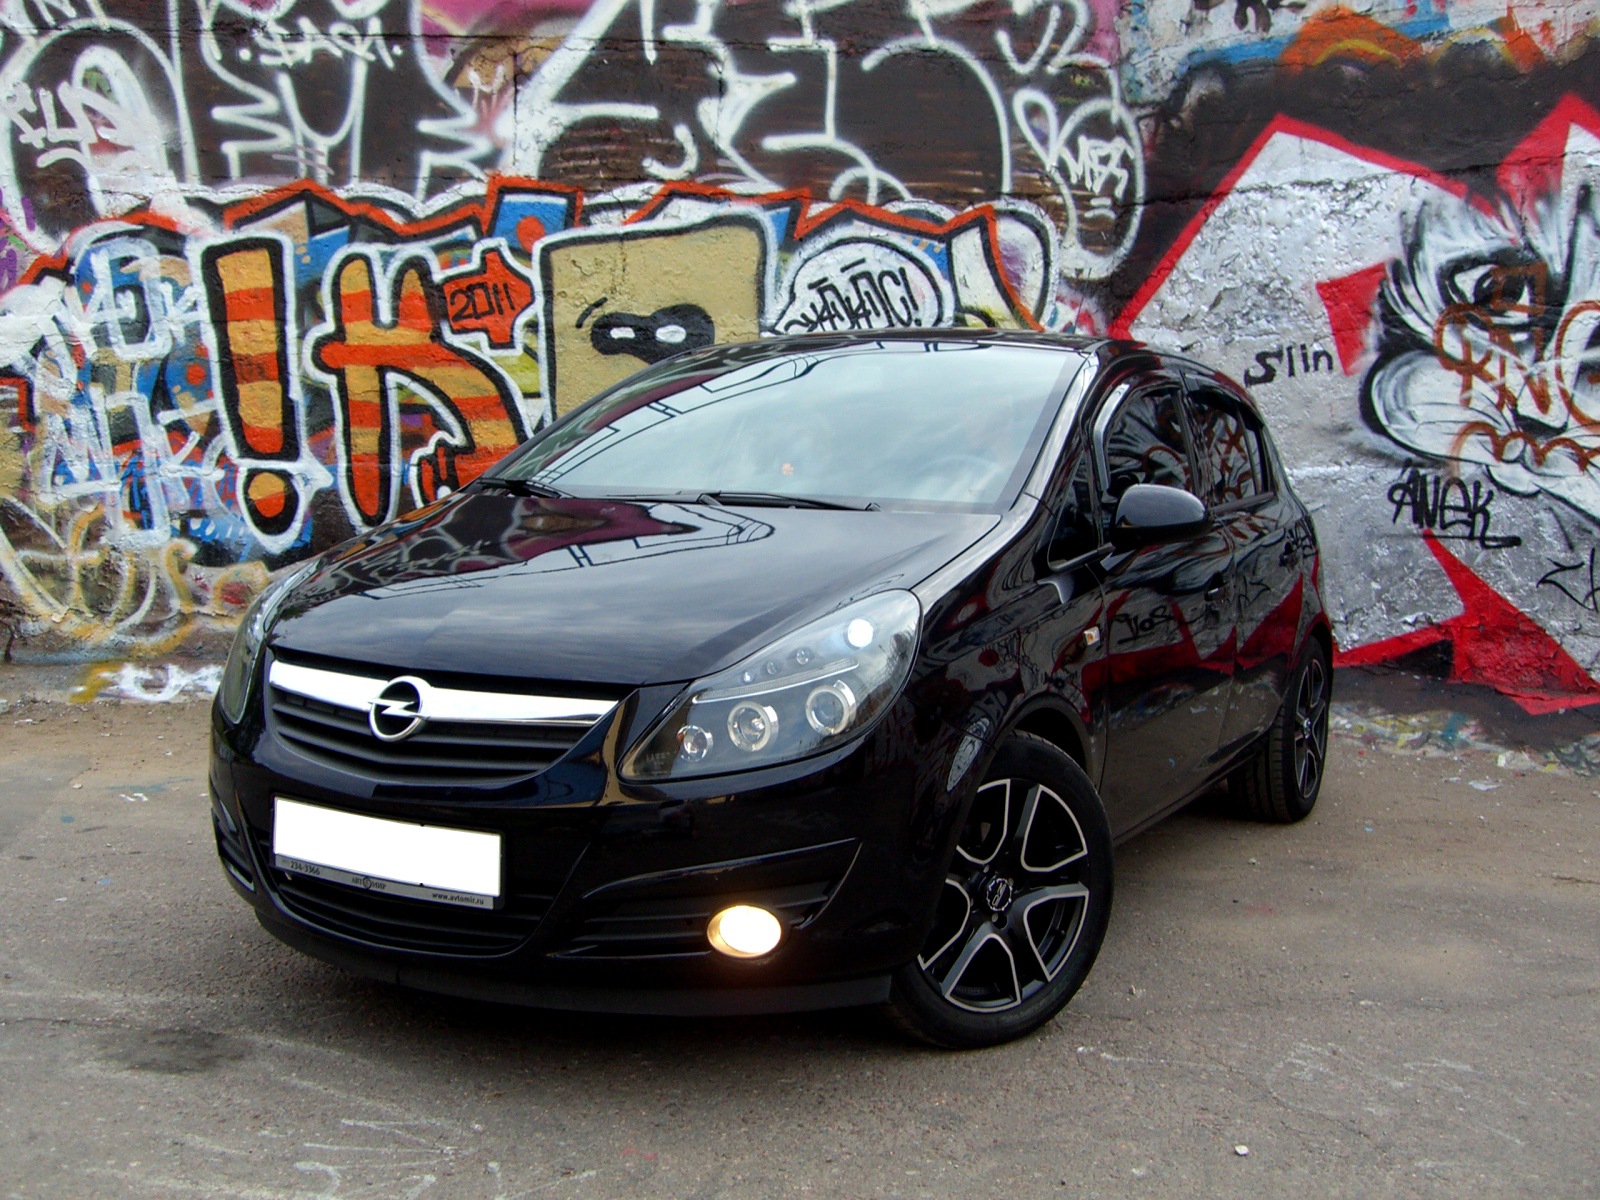 Фары opel corsa d. Opel Corsa d Tuning черная. Опель Корса д 2007 черная. Opel Corsa d черная. Черная оптика Opel Corsa d.